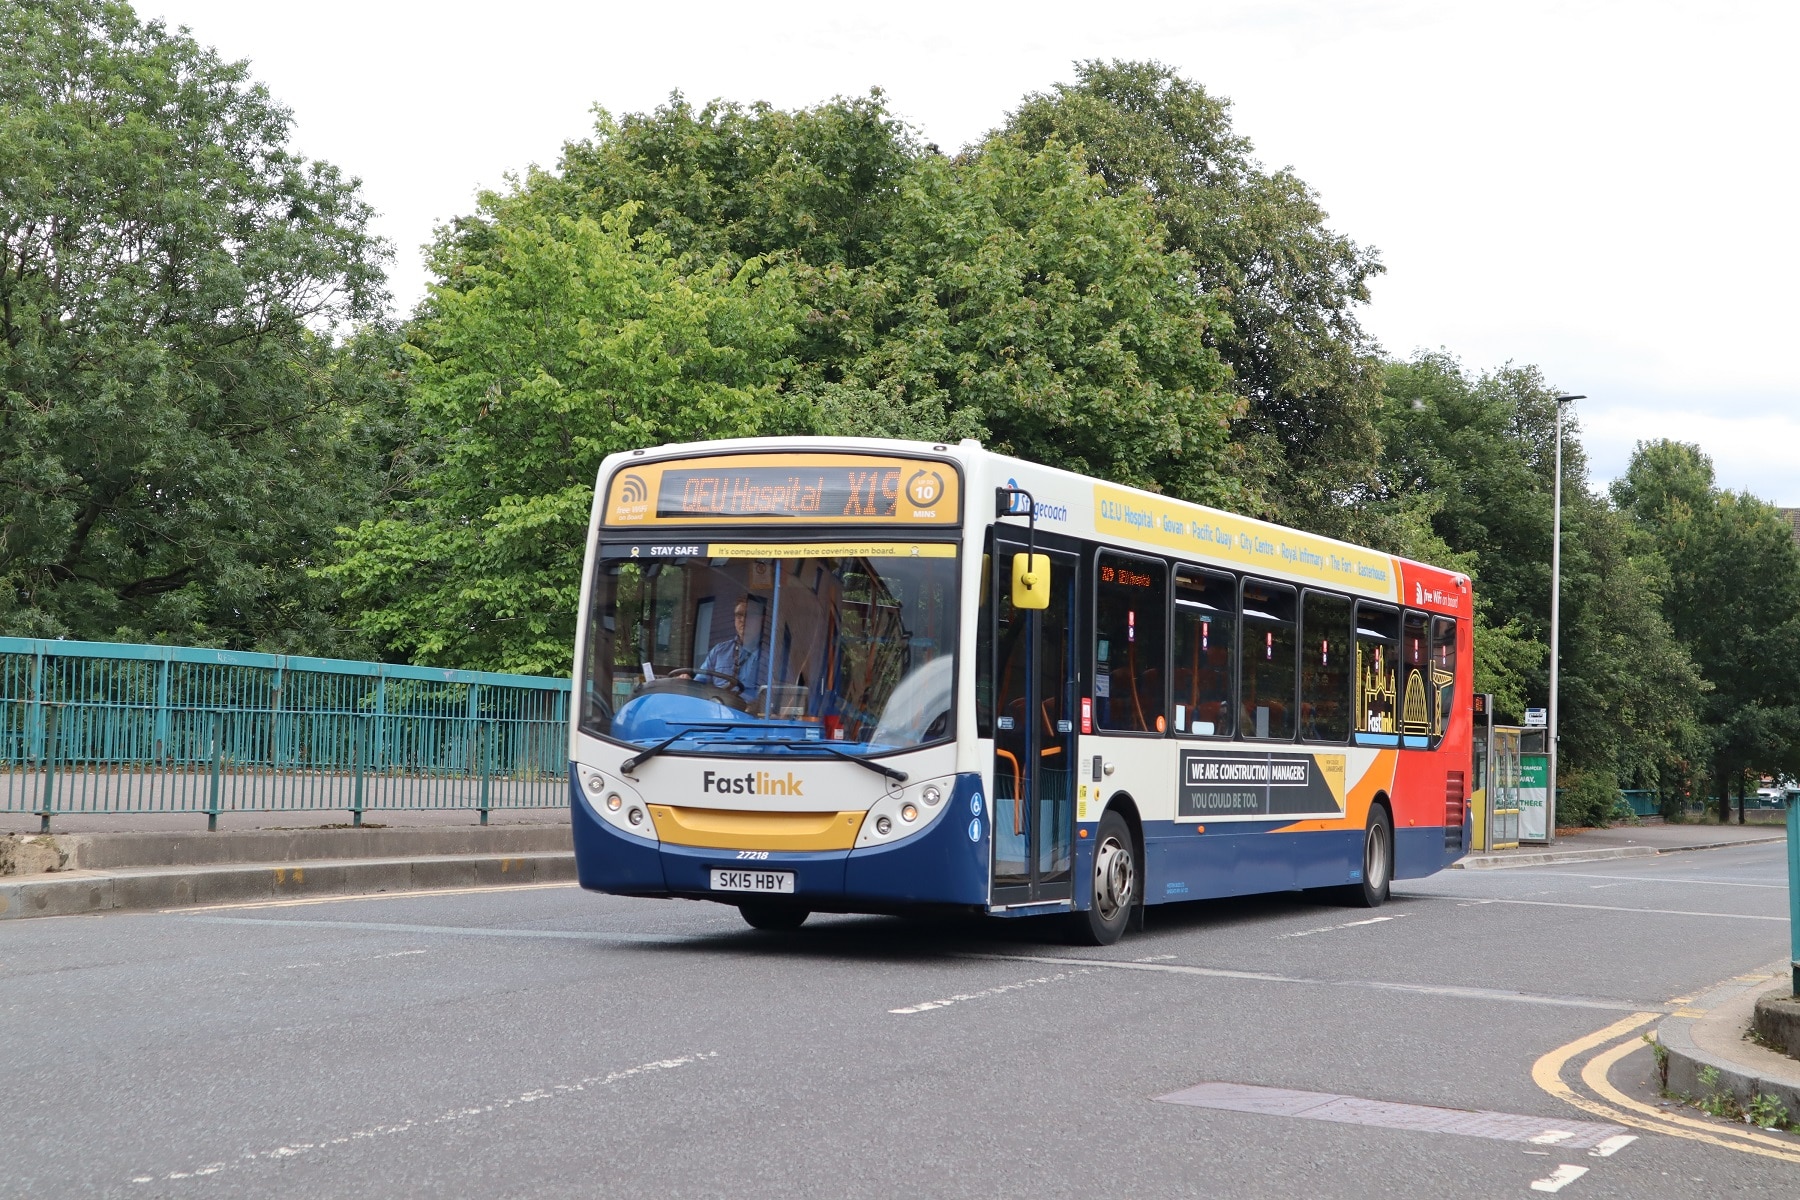 Transport for Strathclyde public transport reform